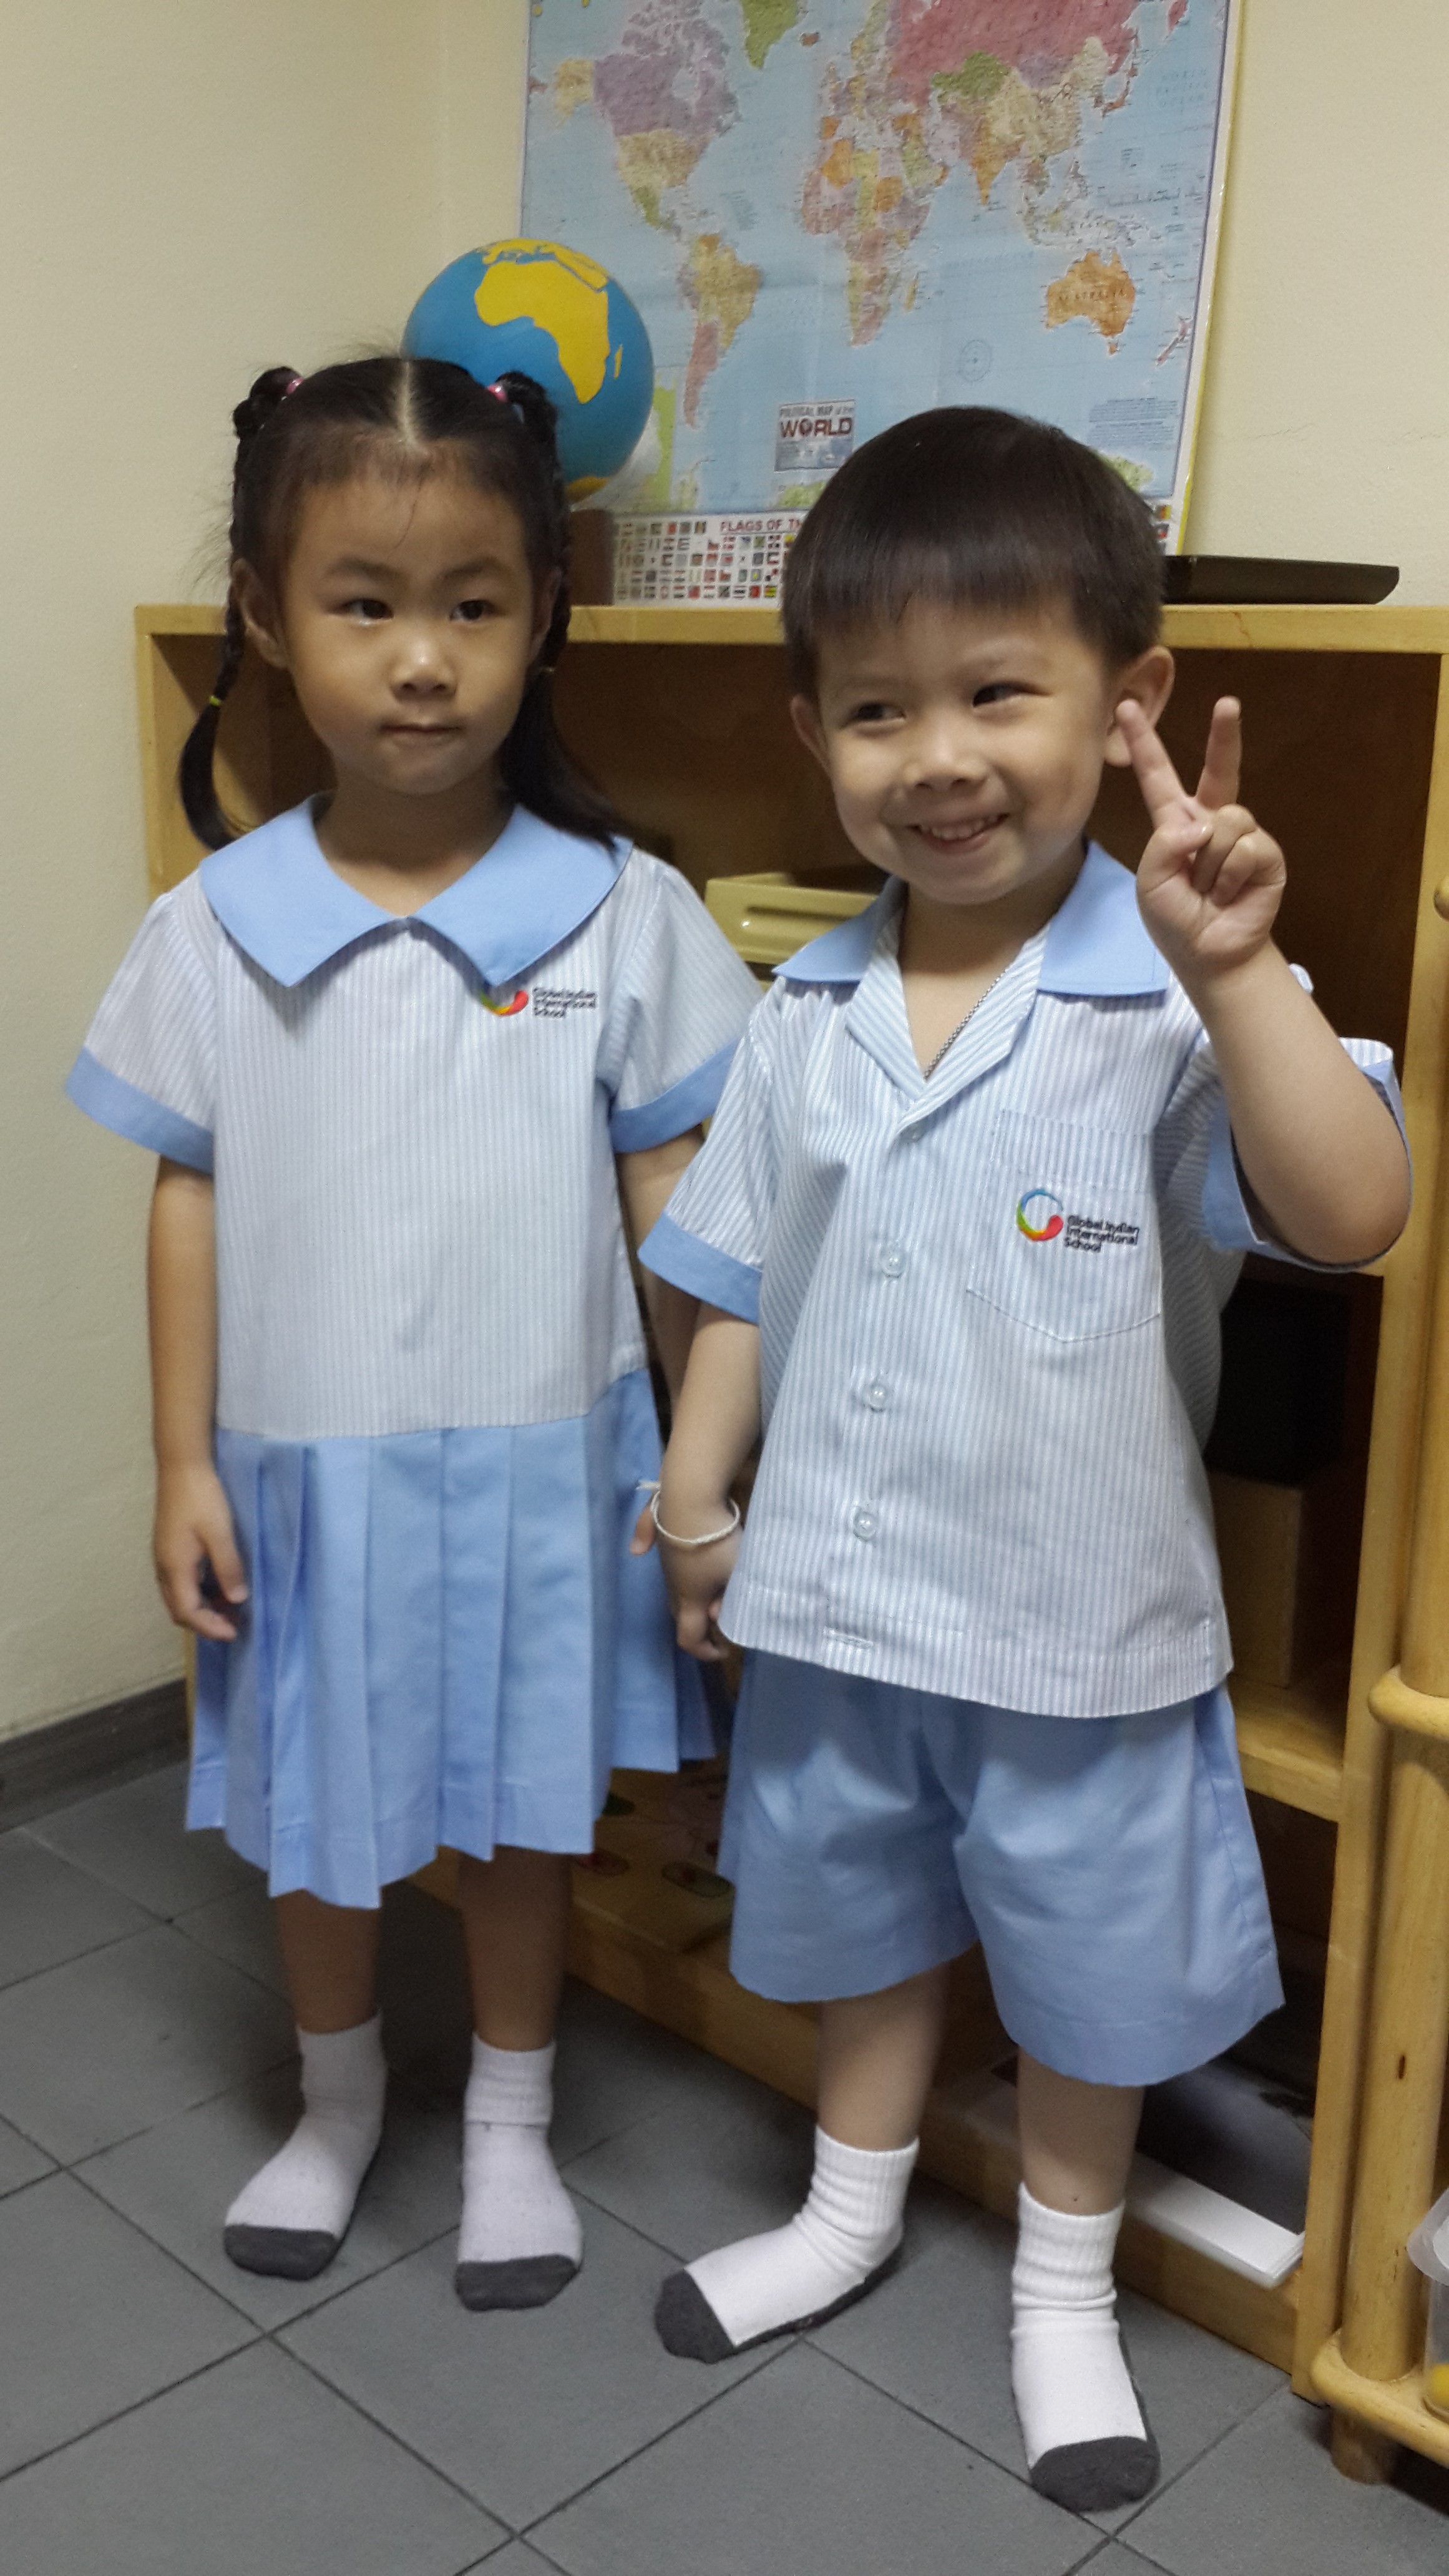 Kindergarten Uniform